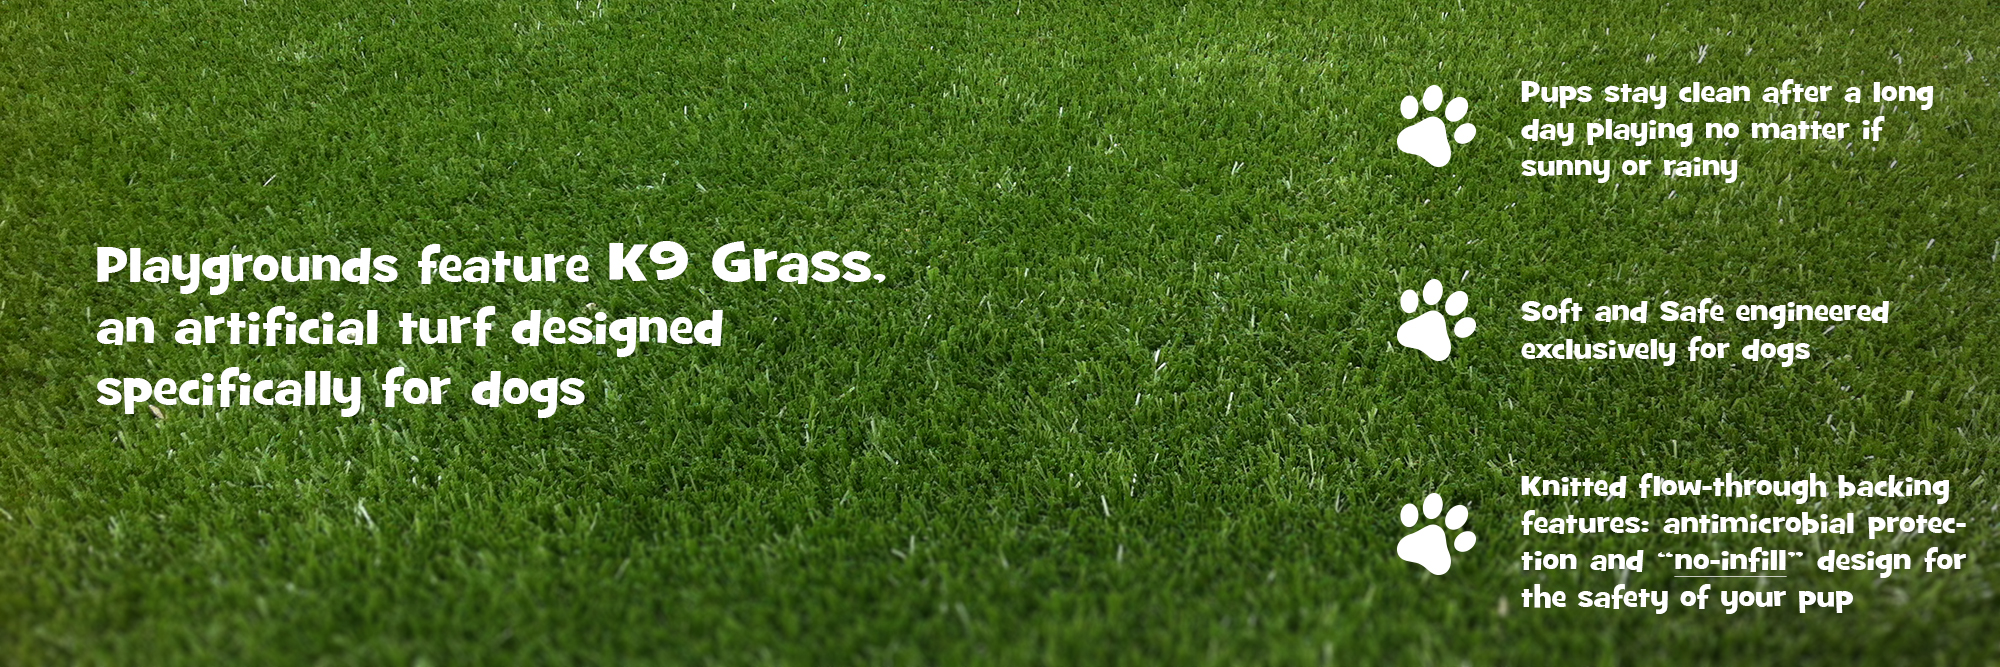 K9 Grass test05